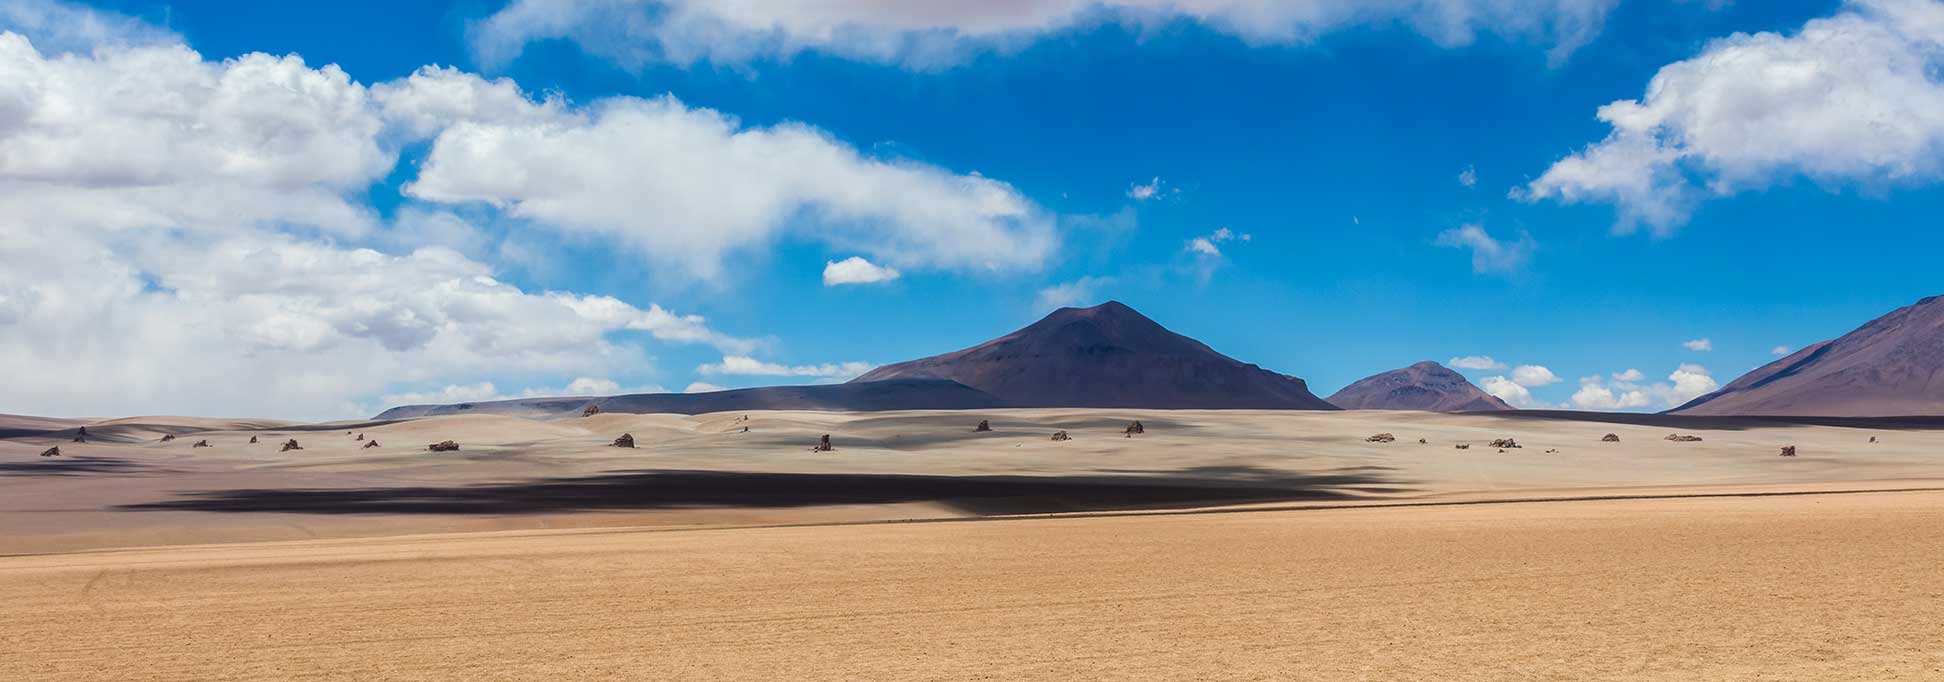 Salvador Dalí Desert in Bolivia